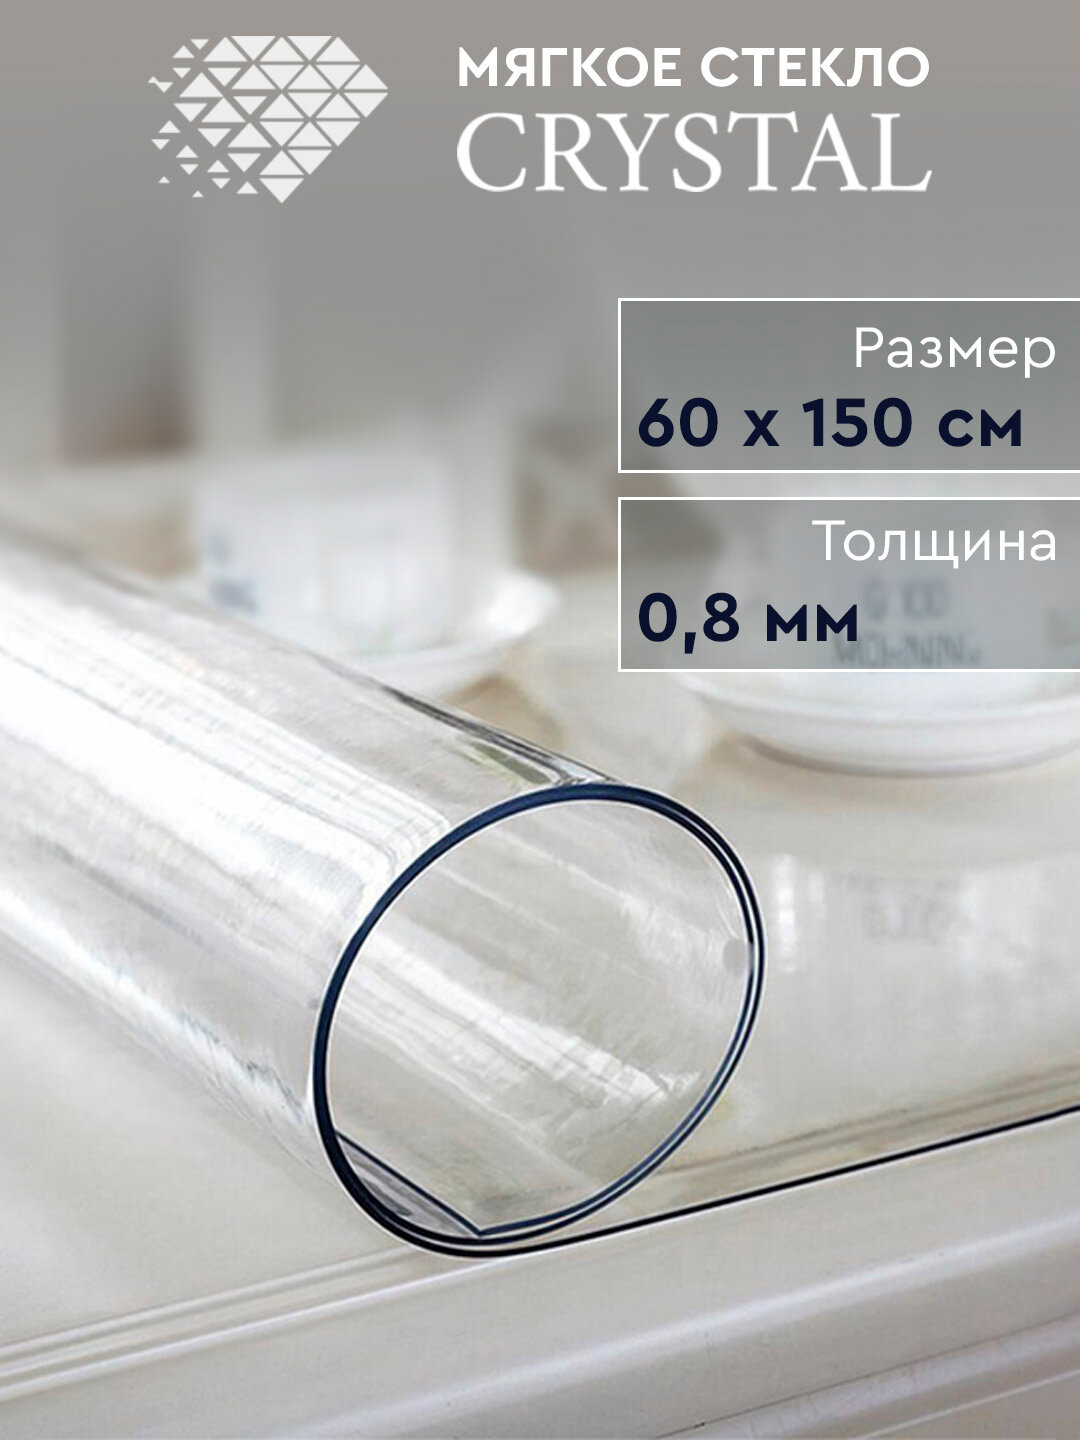 Скатерть термостойкая прозрачная «Мягкое стекло» Crystal 60х150 см, 0.8 мм.